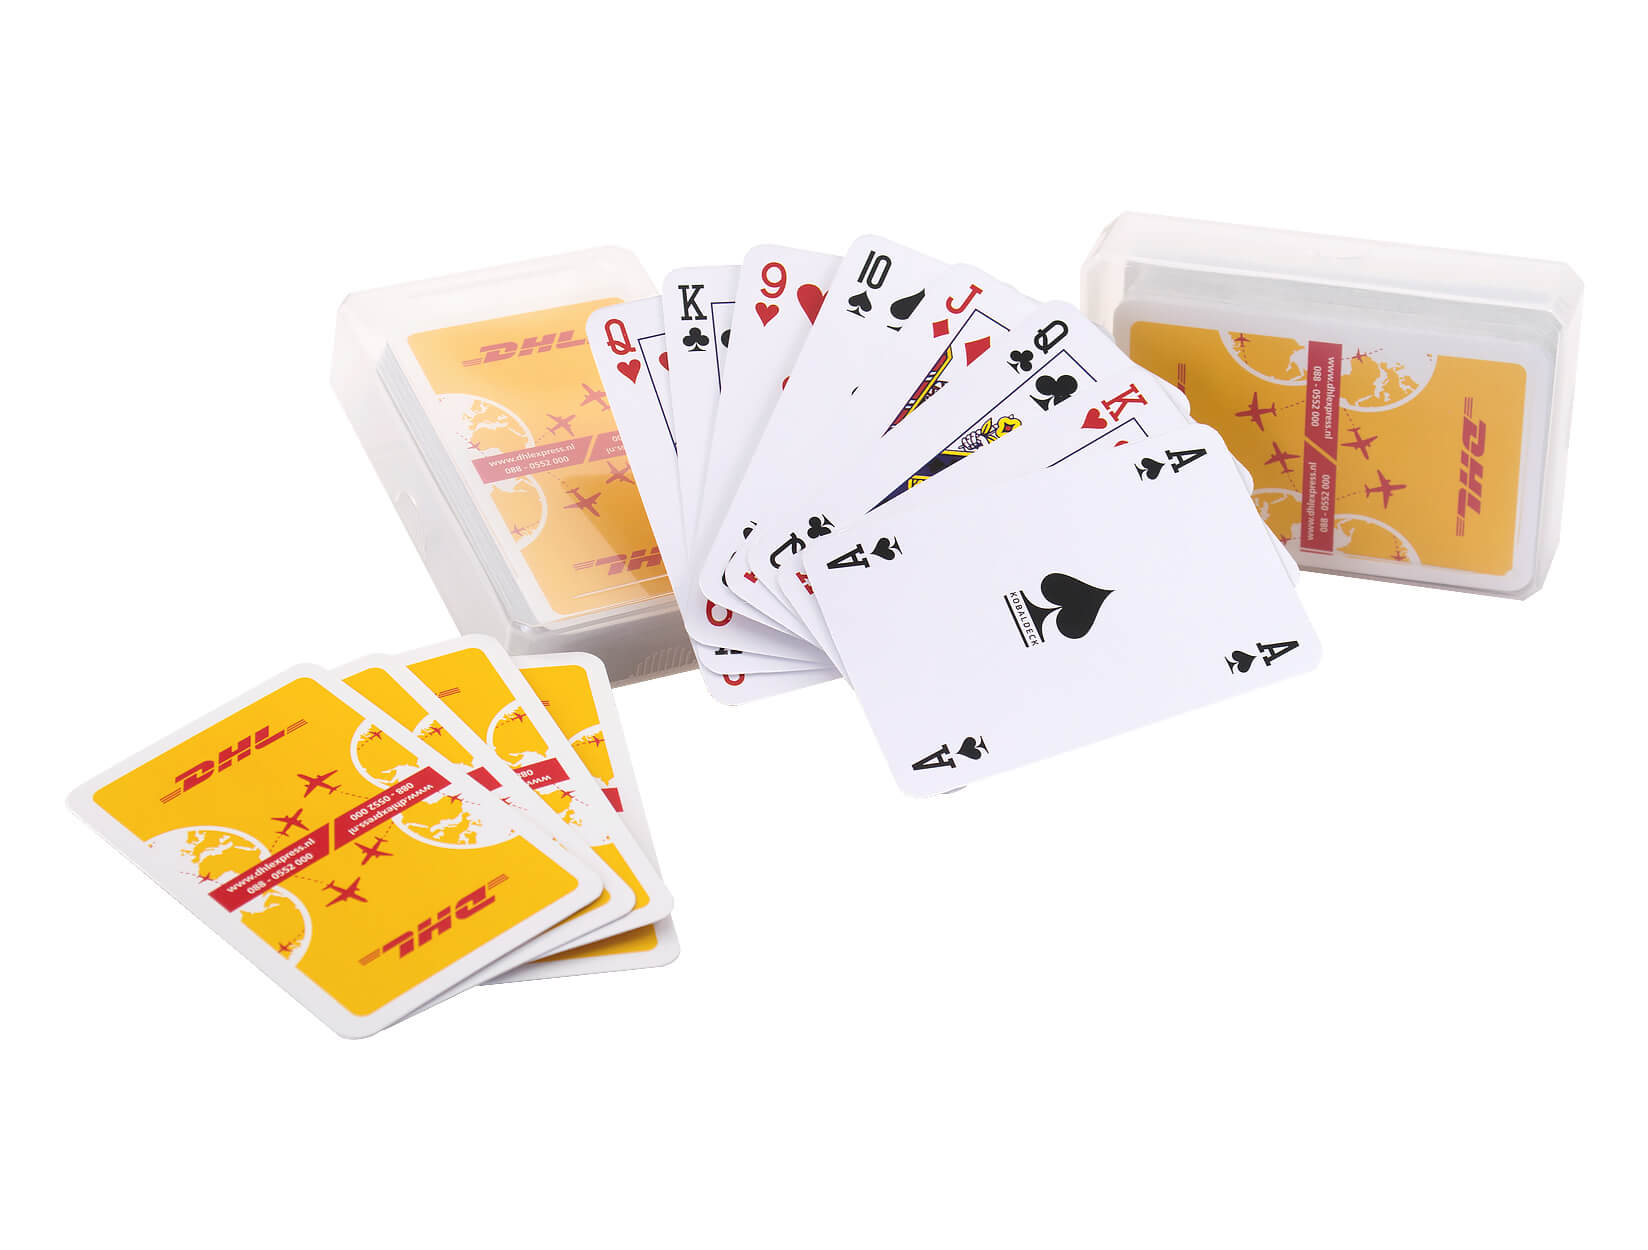 Speelkaarten bedrukken met full-color achterzijde - Goedkoop!